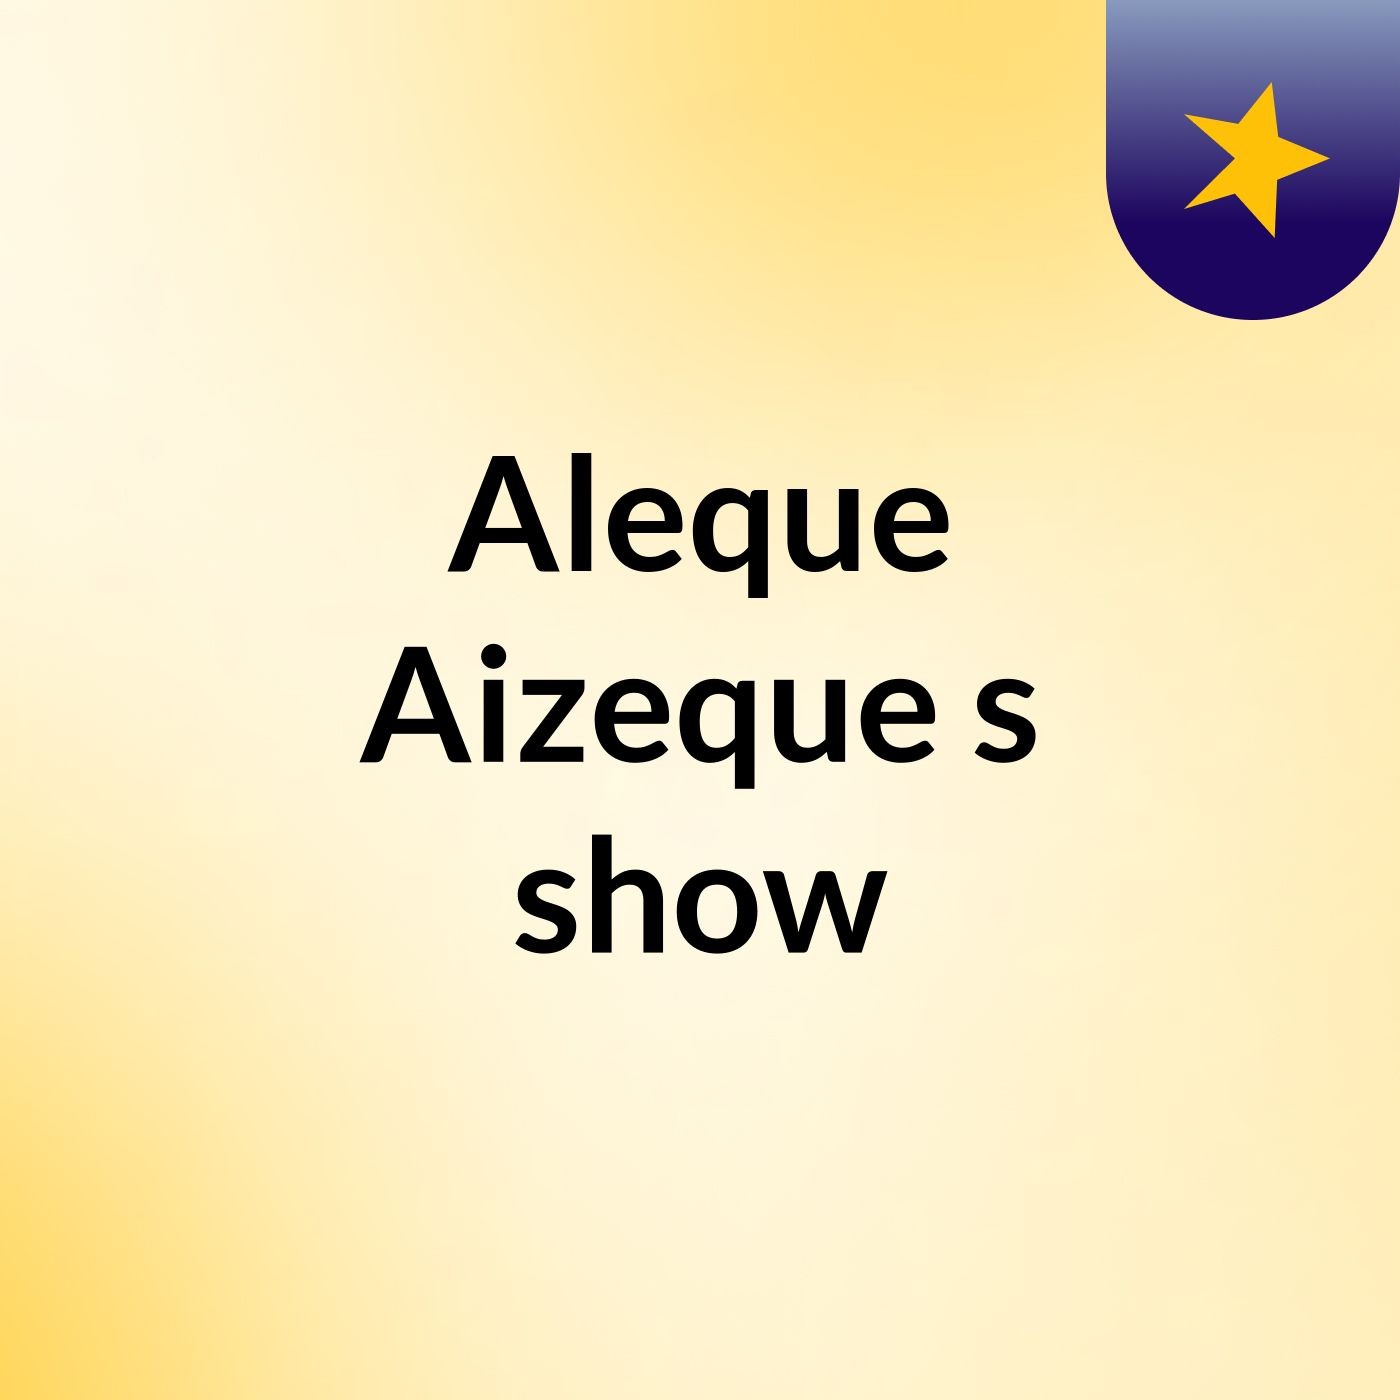 Aleque Aizeque's show